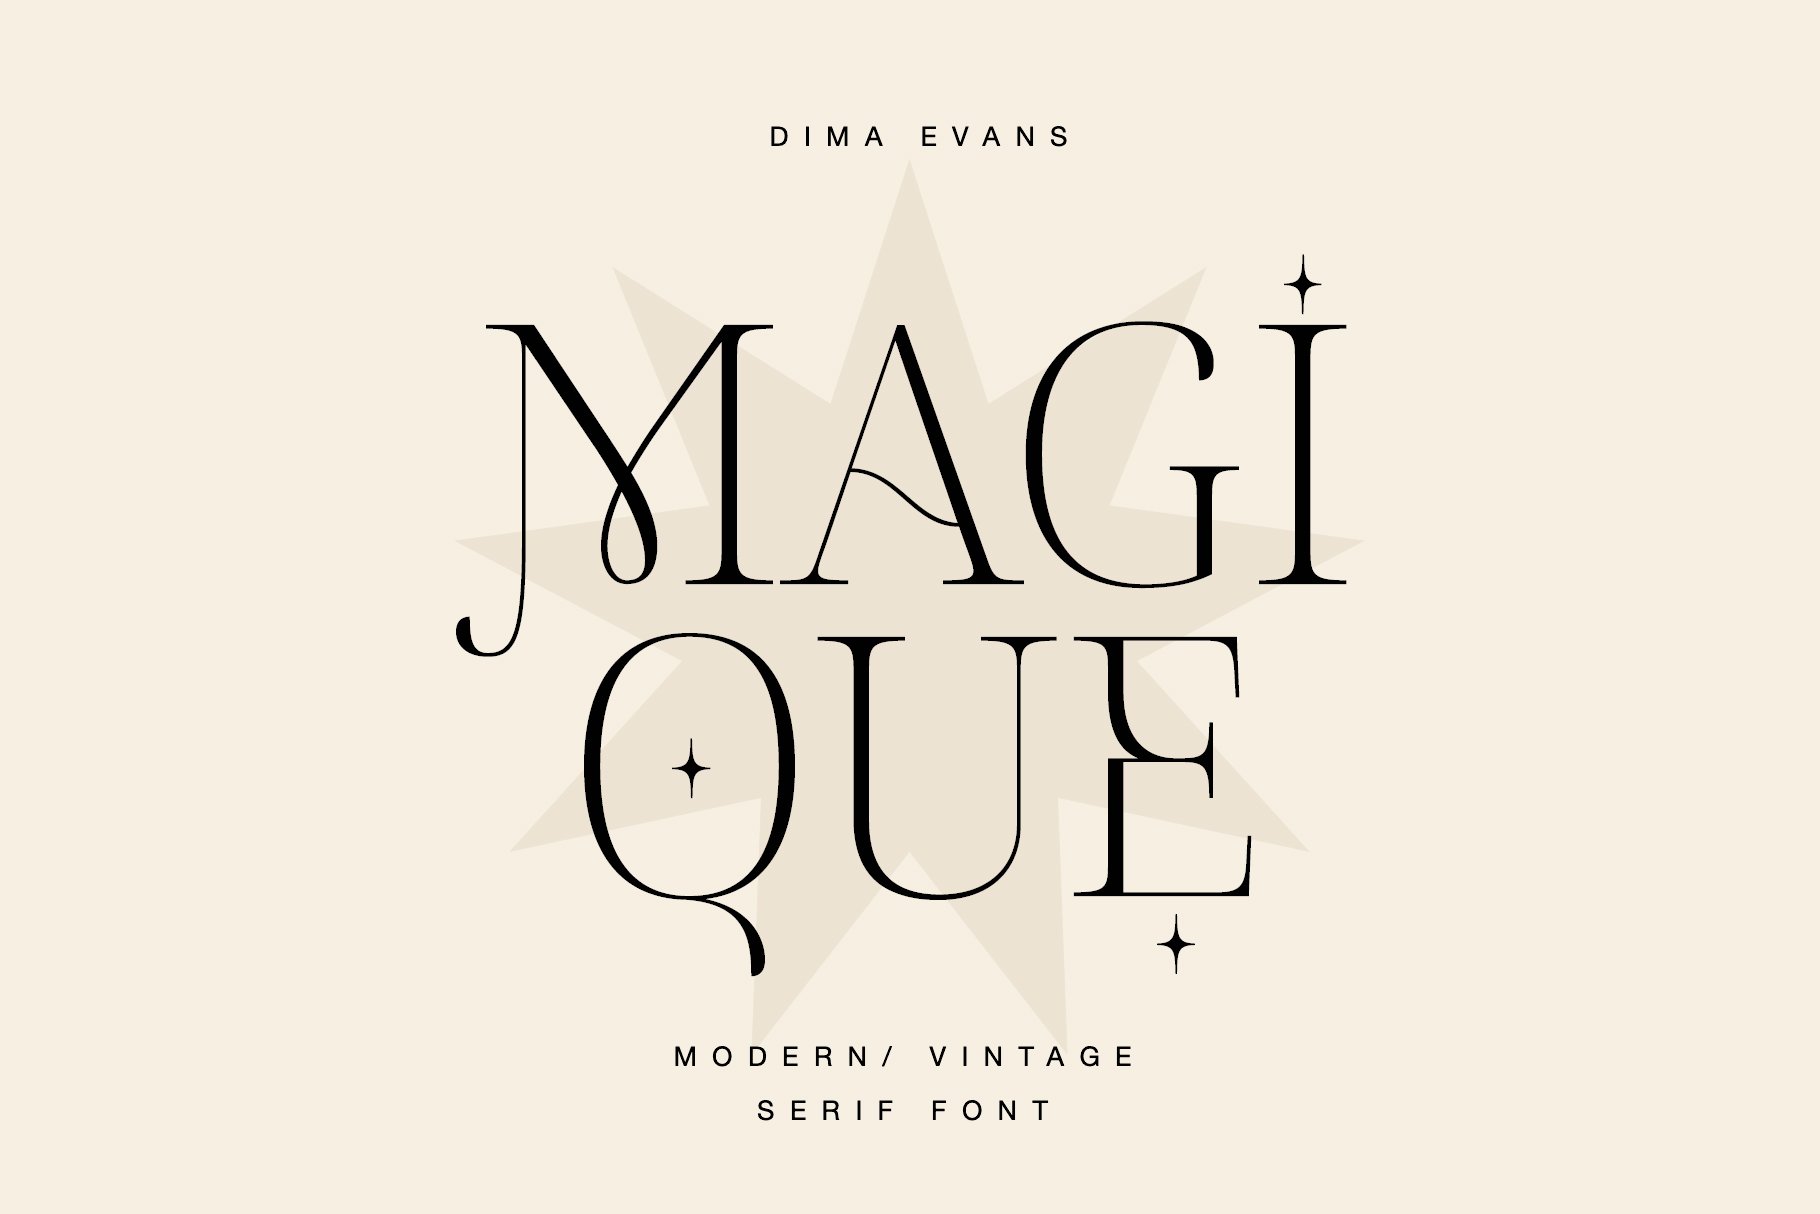 Magique. Modern Vintage serif cover image.